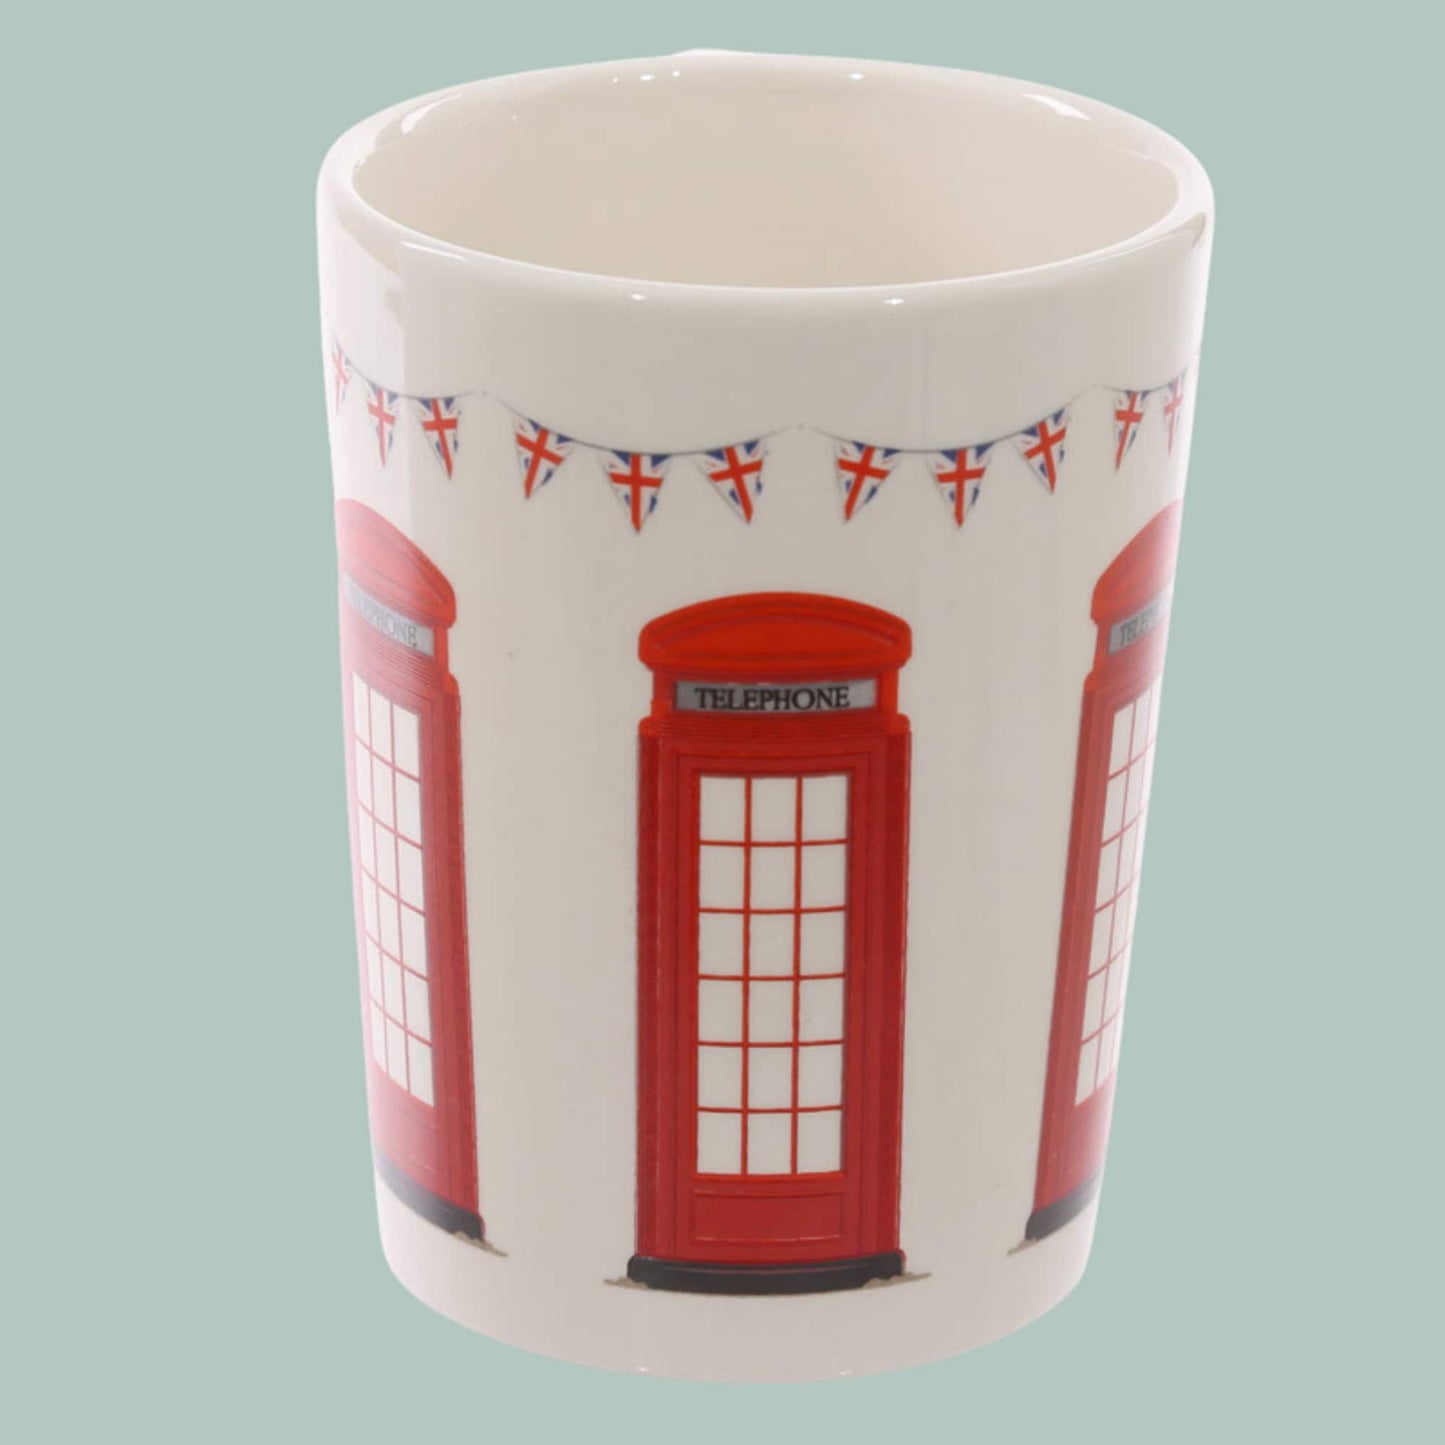 Novelty London Phone Box Handle Ceramic Mug